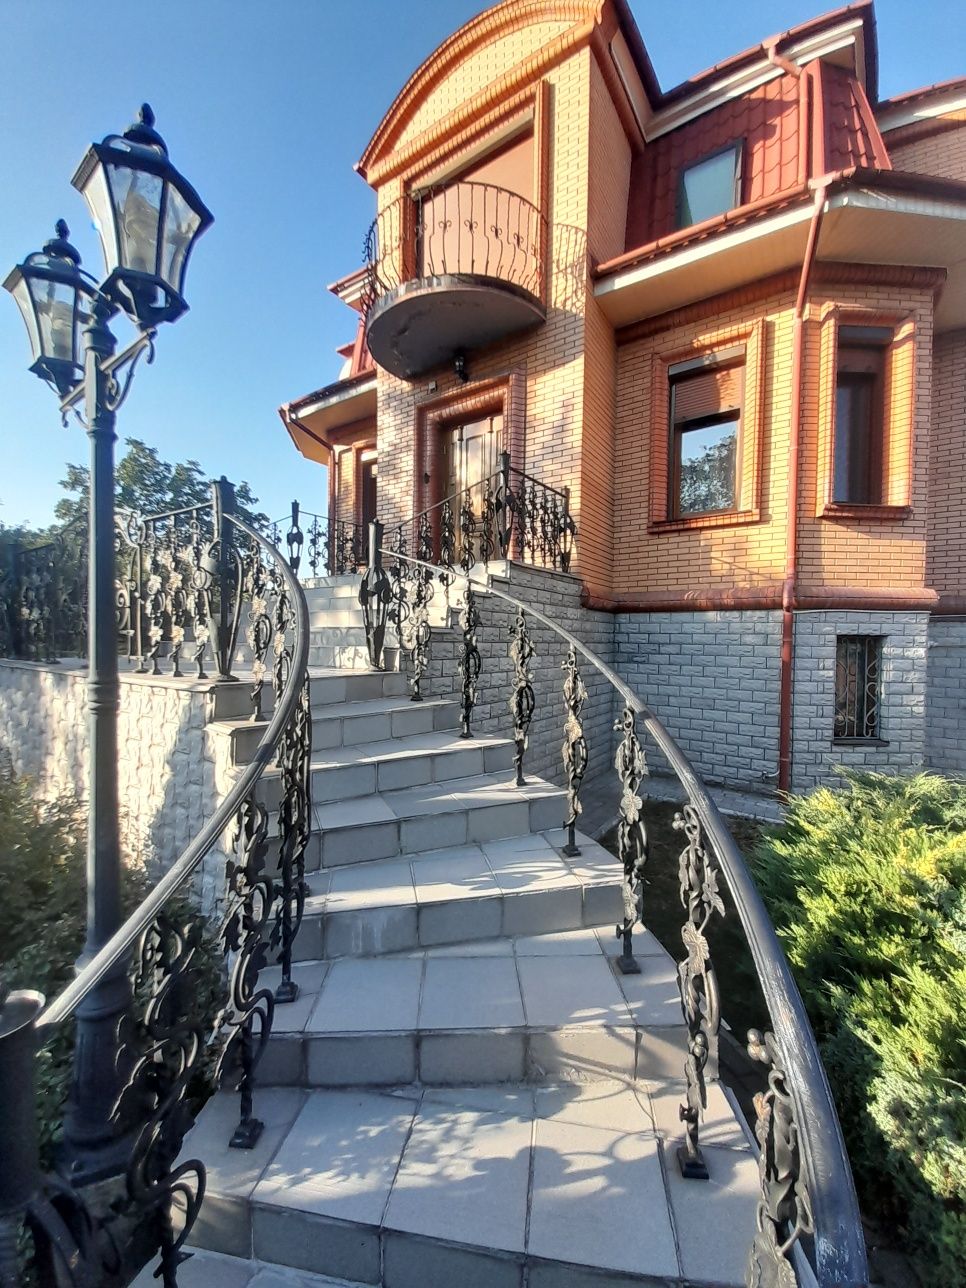 Продаж житлового будинку по вул. Володимирській в центрі м. Малин